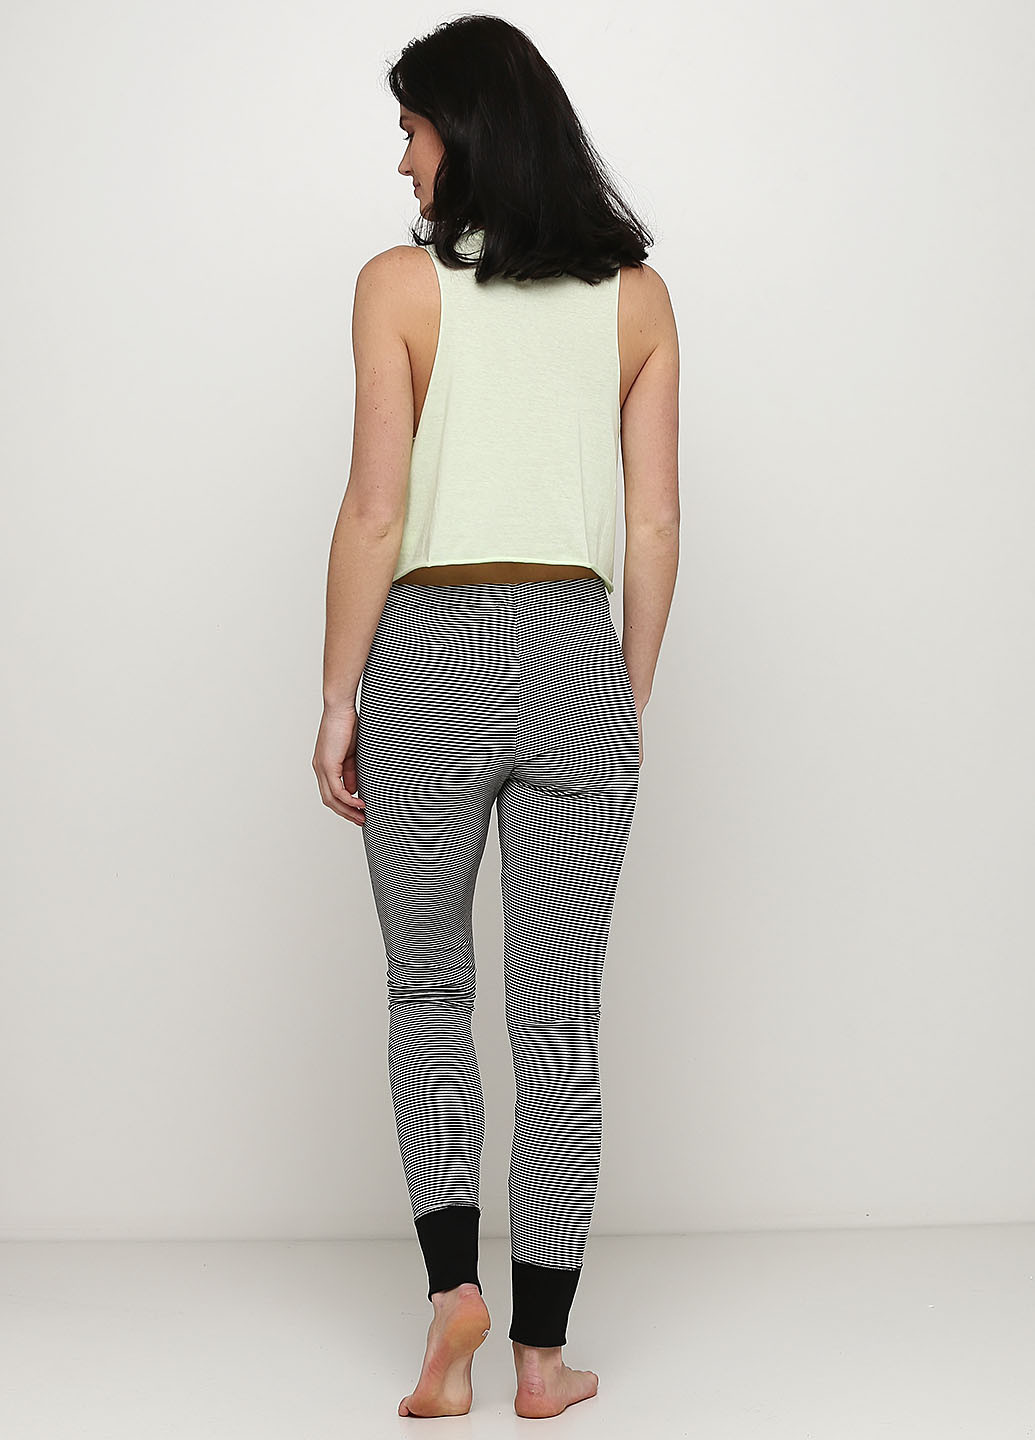 Комбинированная всесезон пижама (майка, брюки) майка + брюки H&M